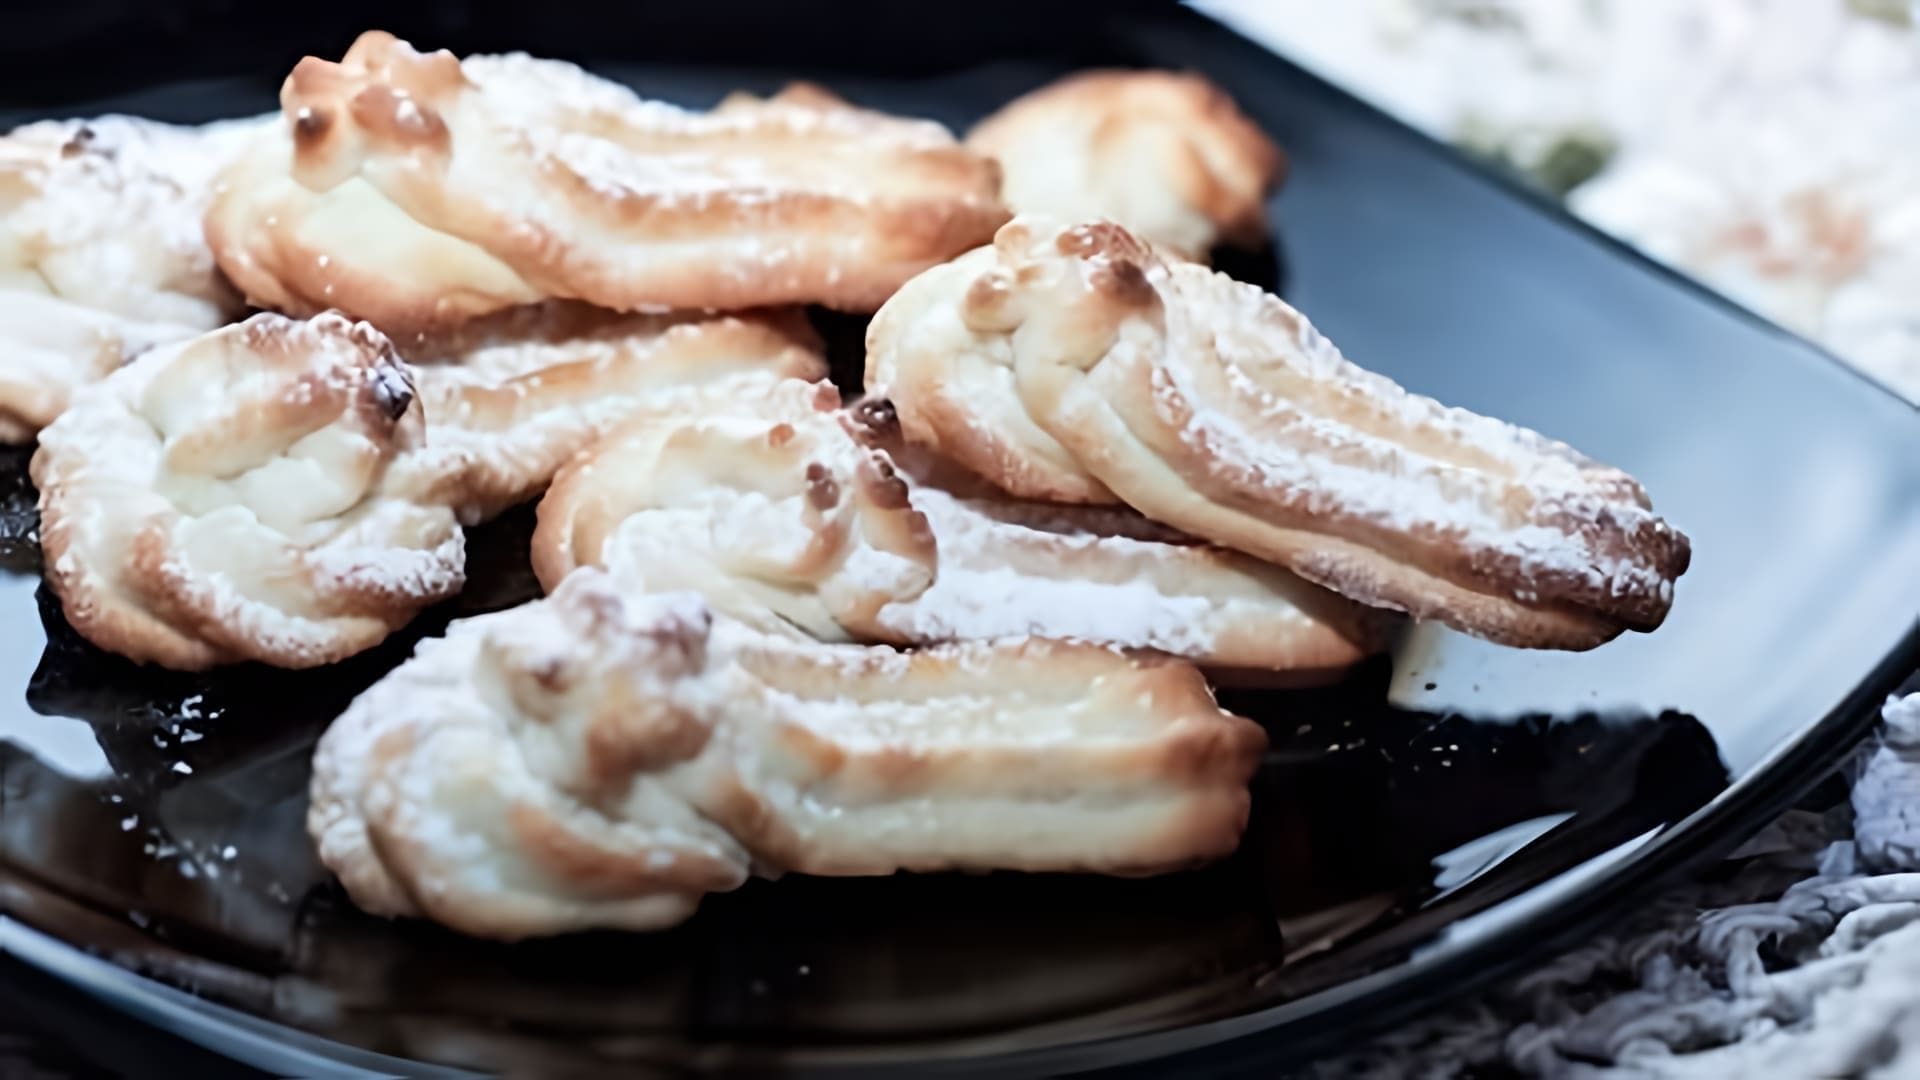 В этом видео демонстрируется рецепт приготовления песочного печенья в домашних условиях